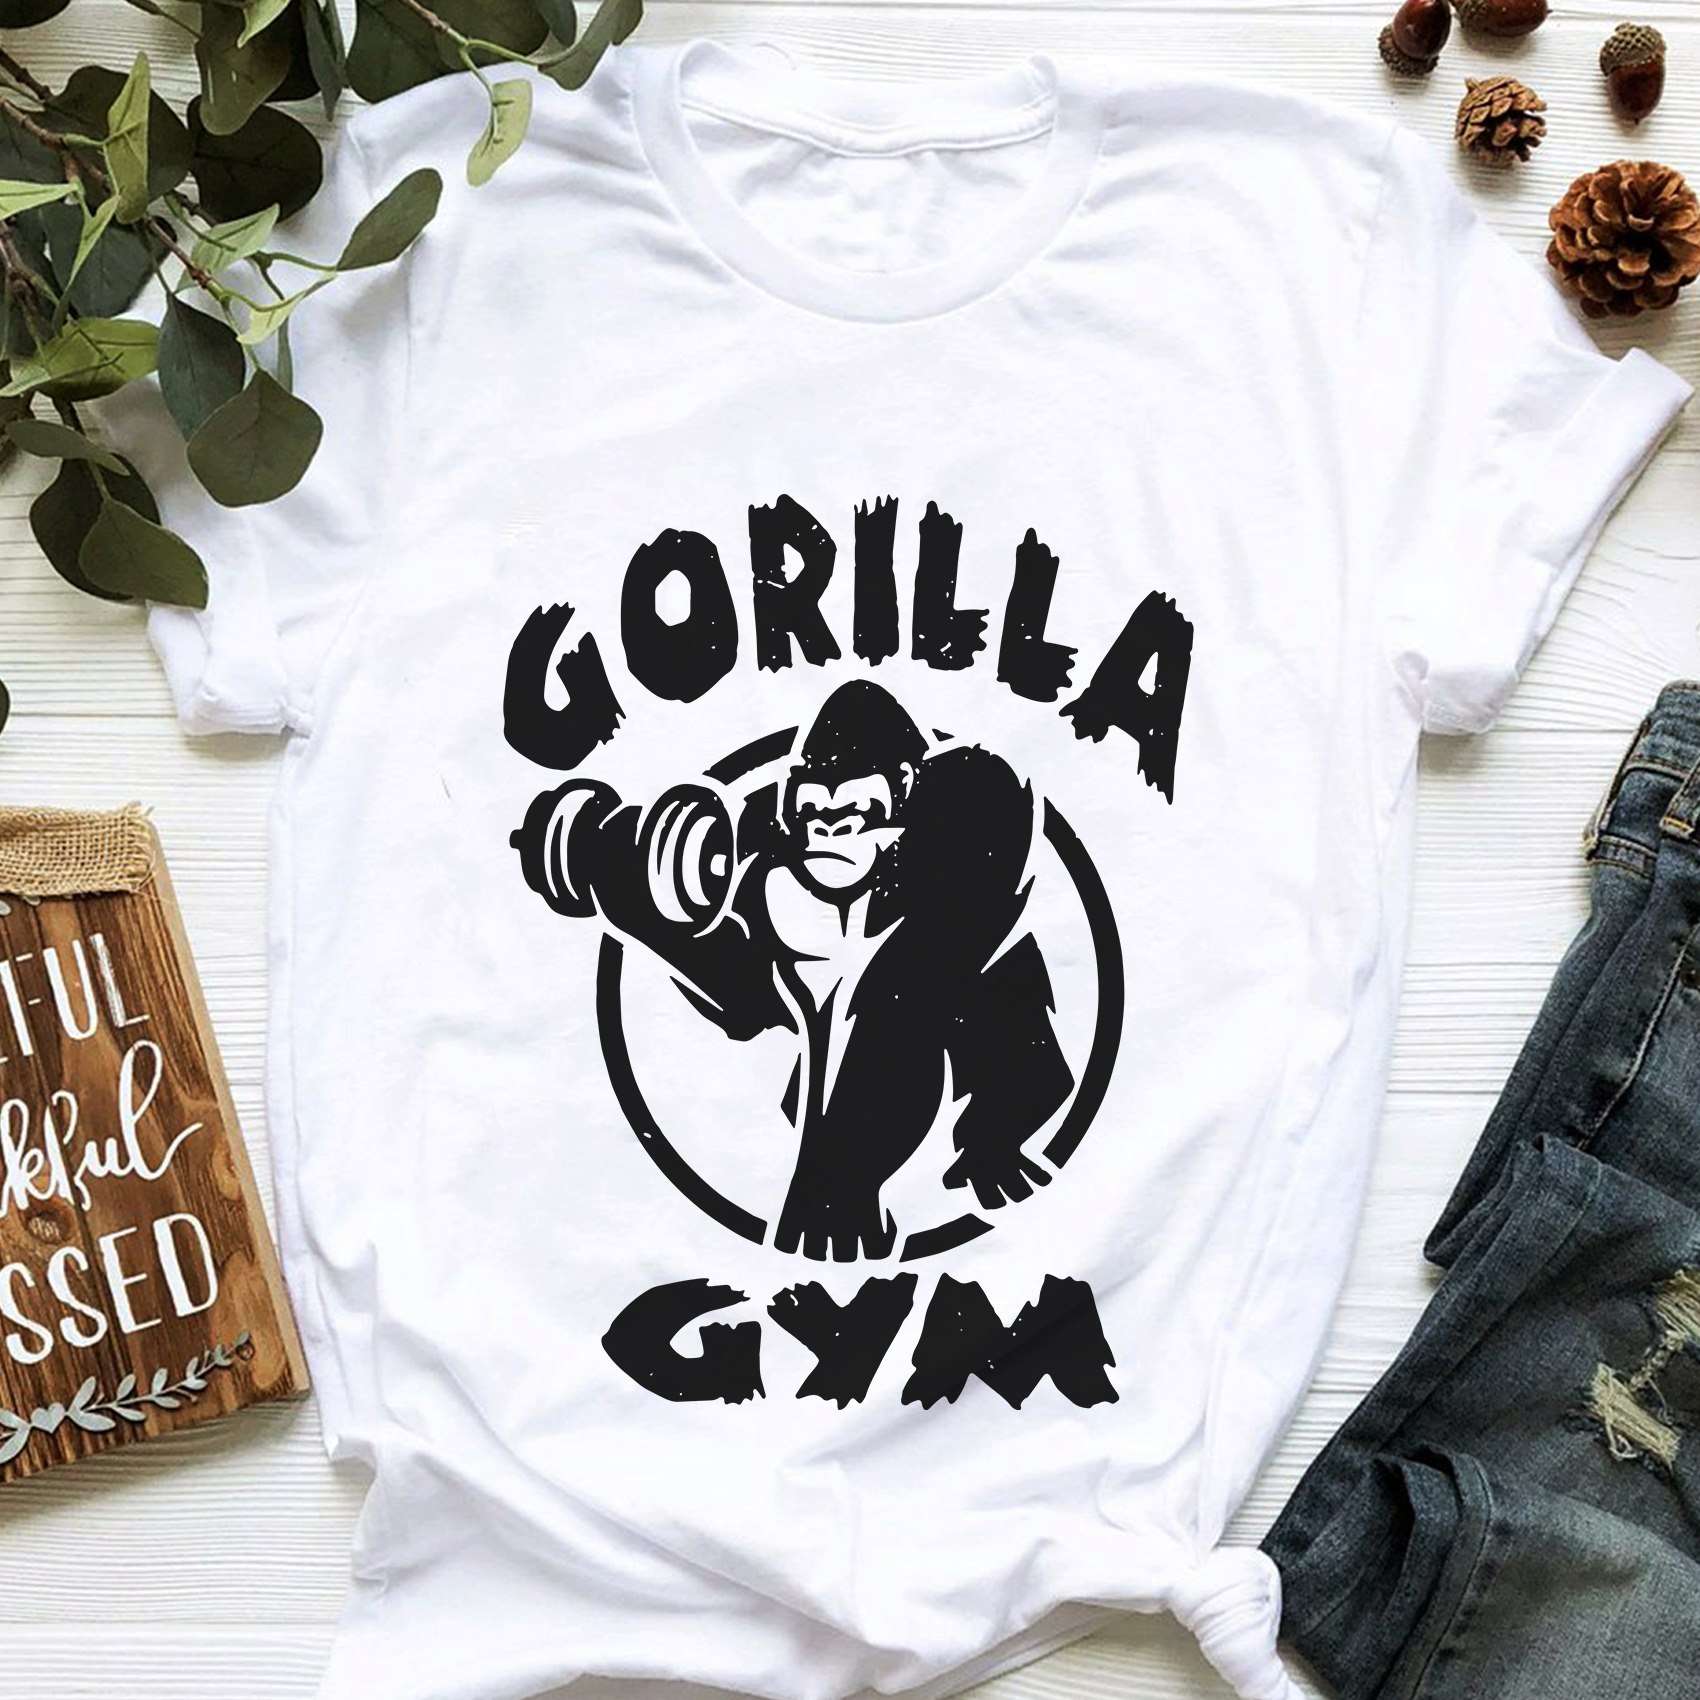 Gorrila gym - Lifting like Gorrila, gift for gymmer